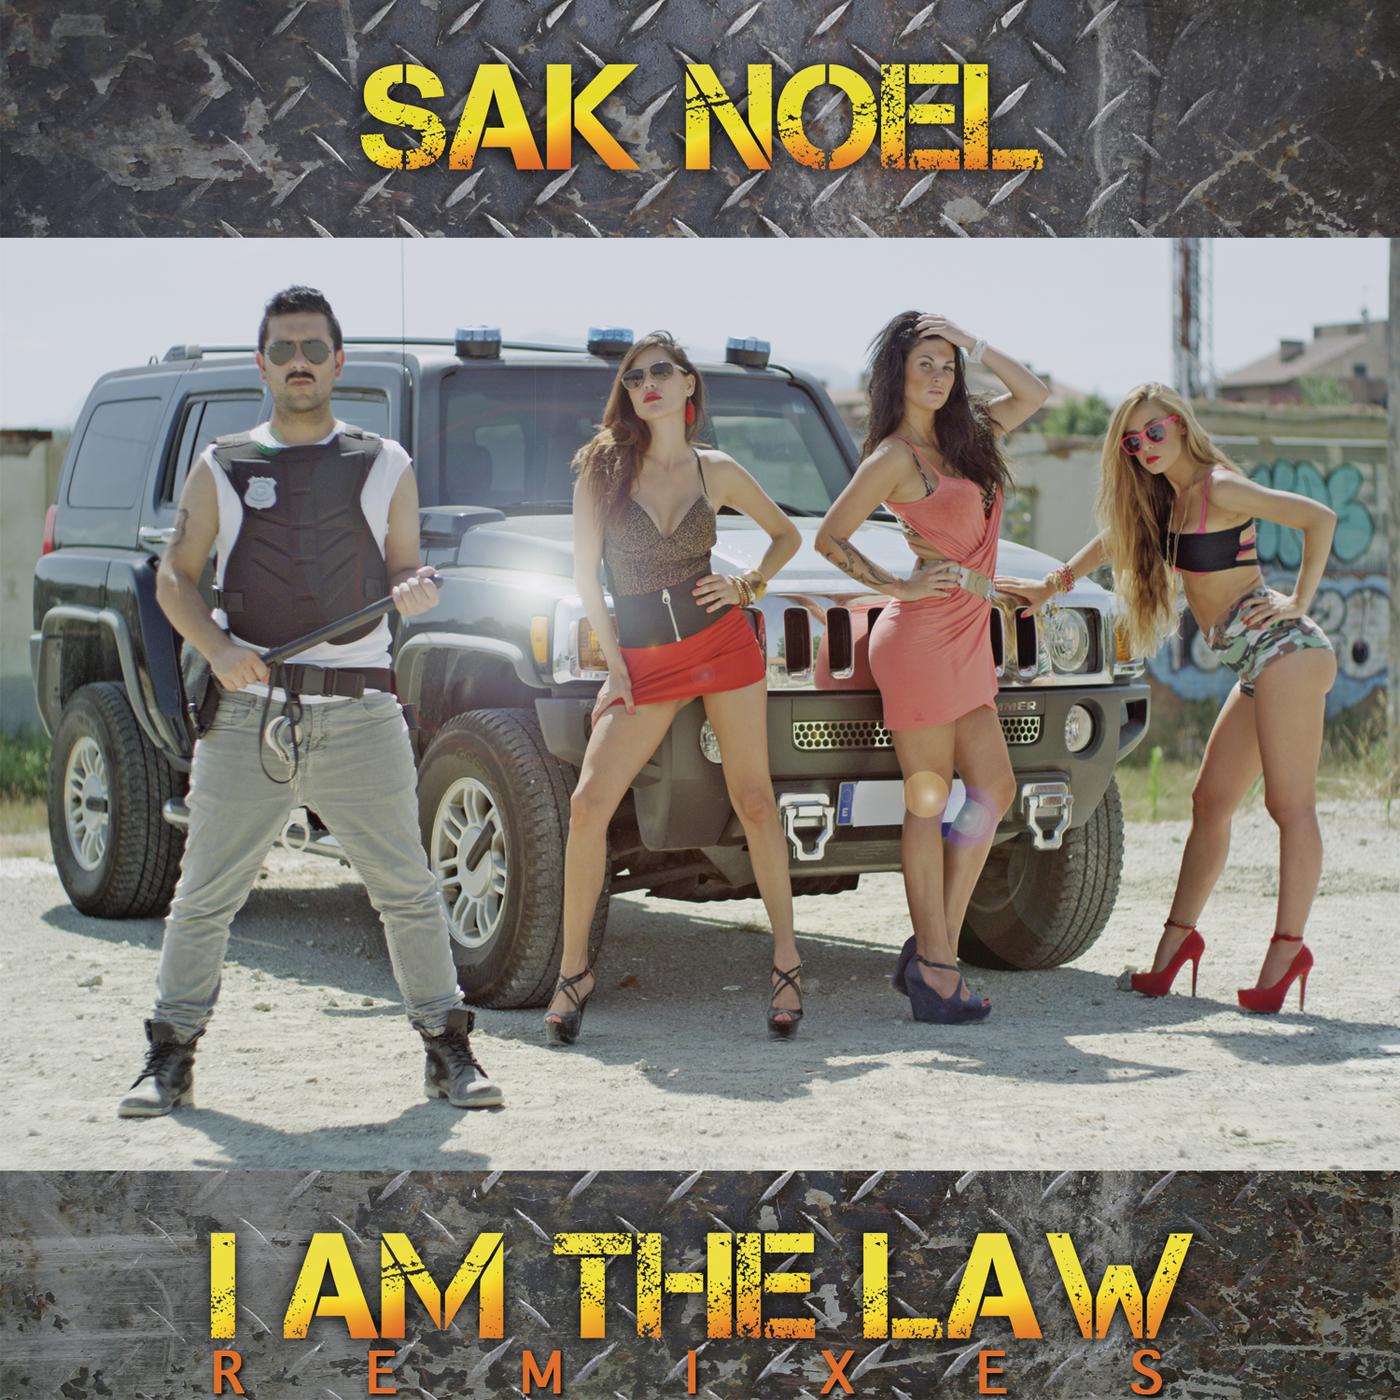 Sak Noel - I Am the Law (Reid Stefan Remix)